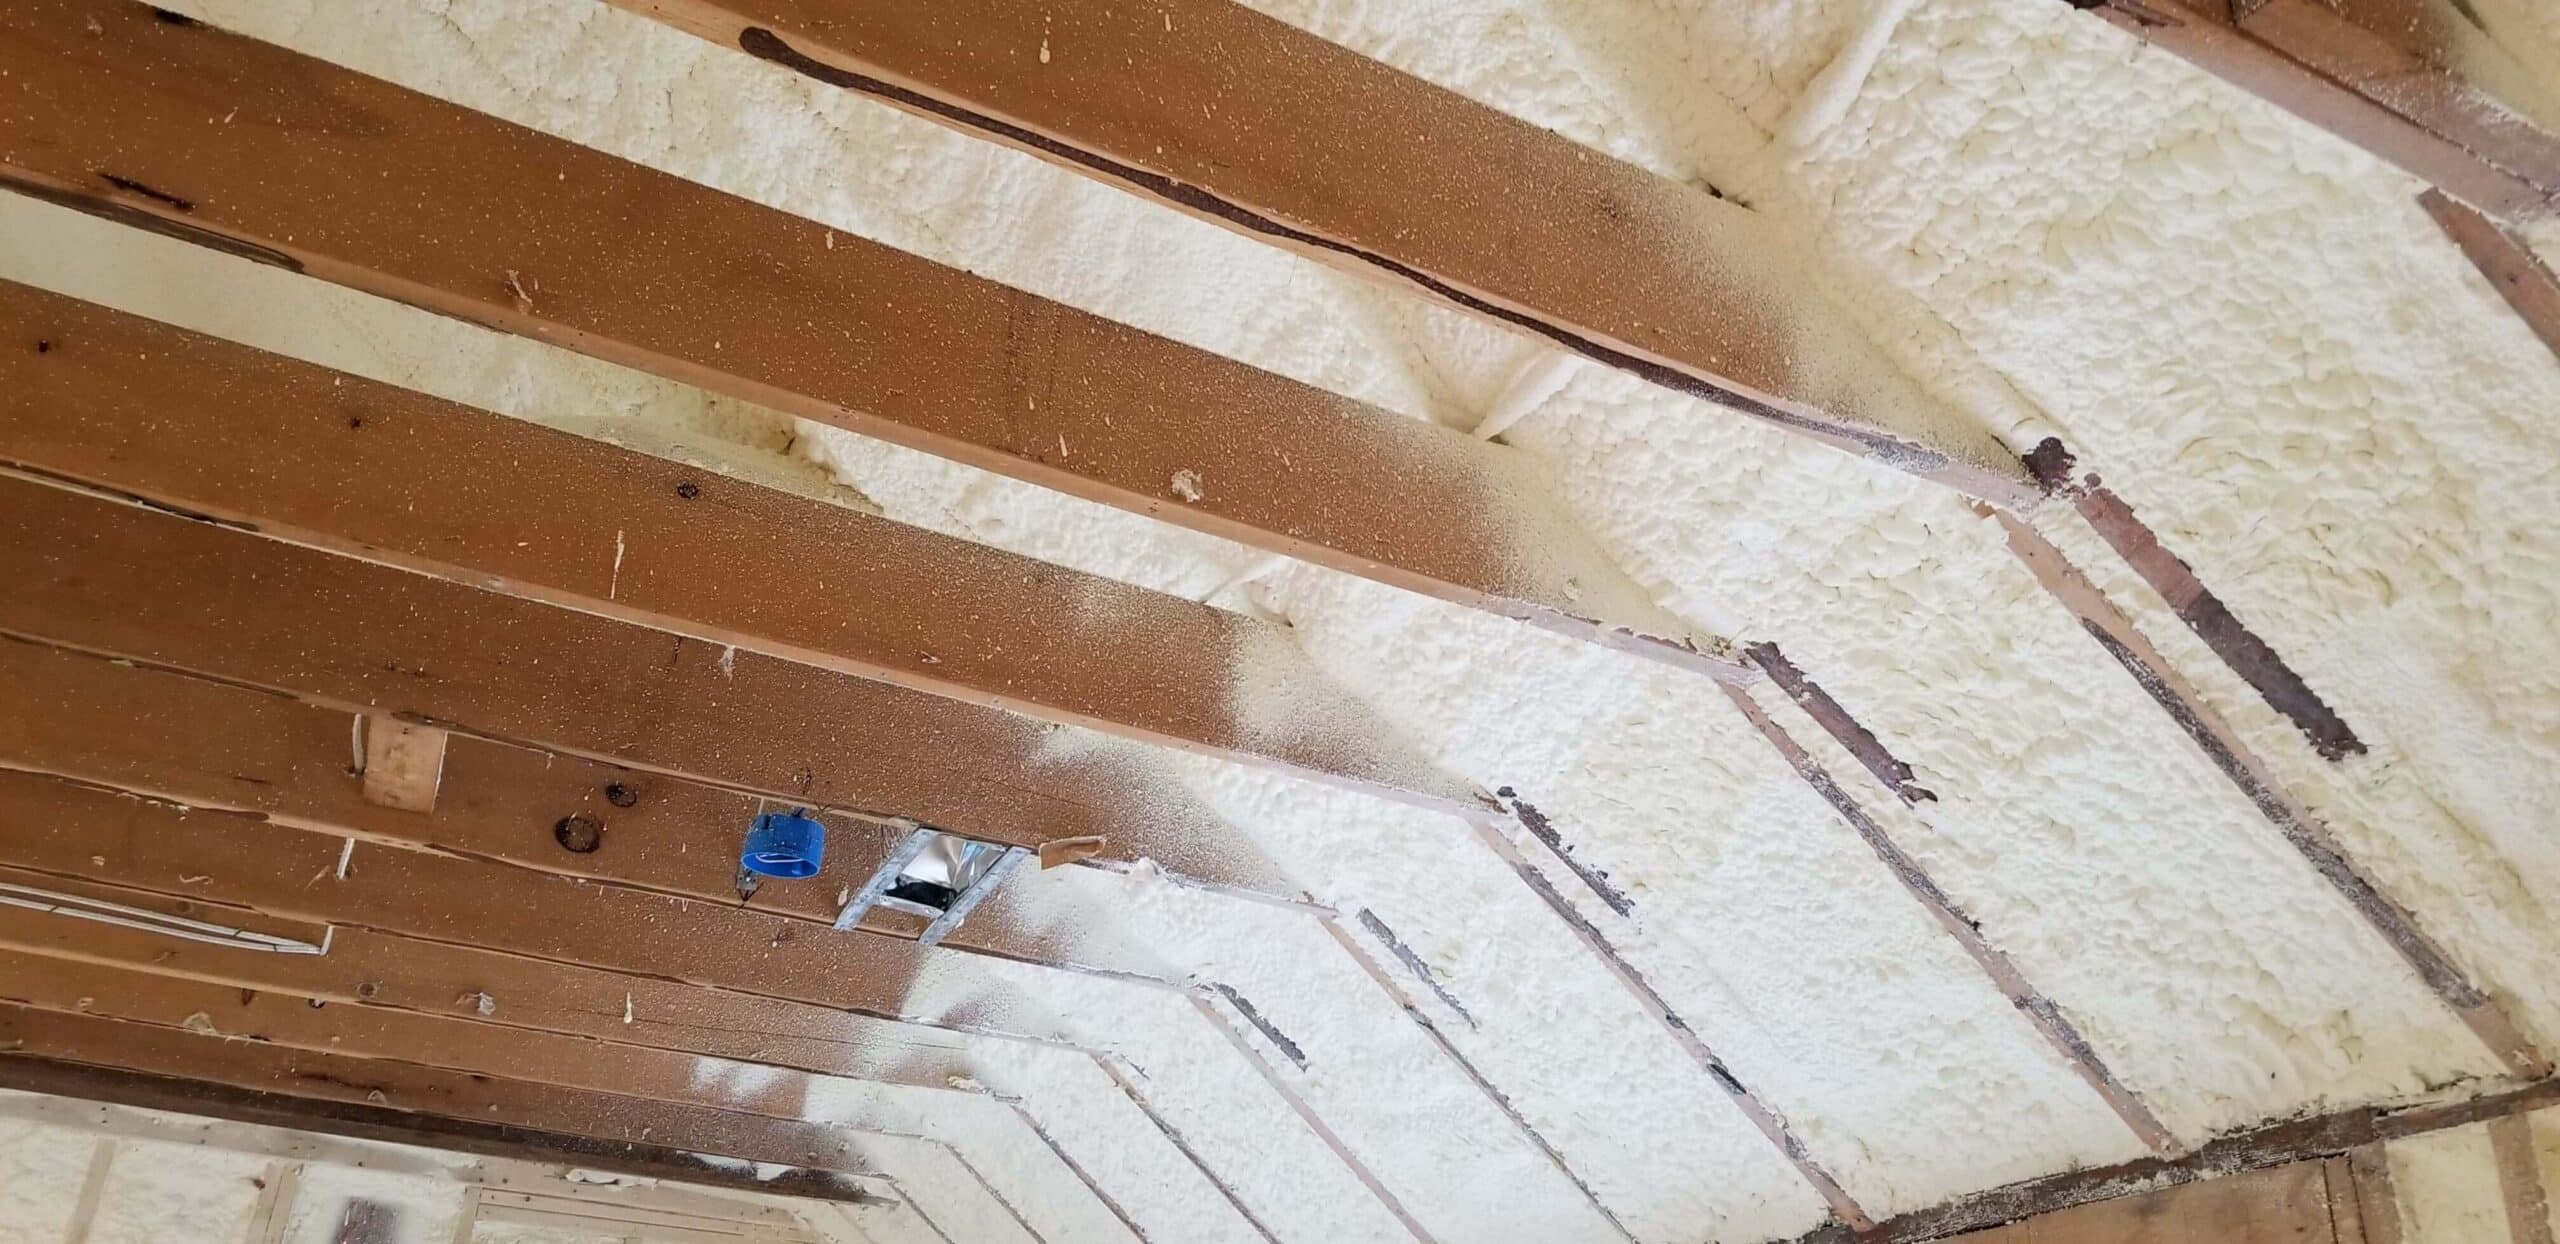 Spray foam insulation applied in an attic.